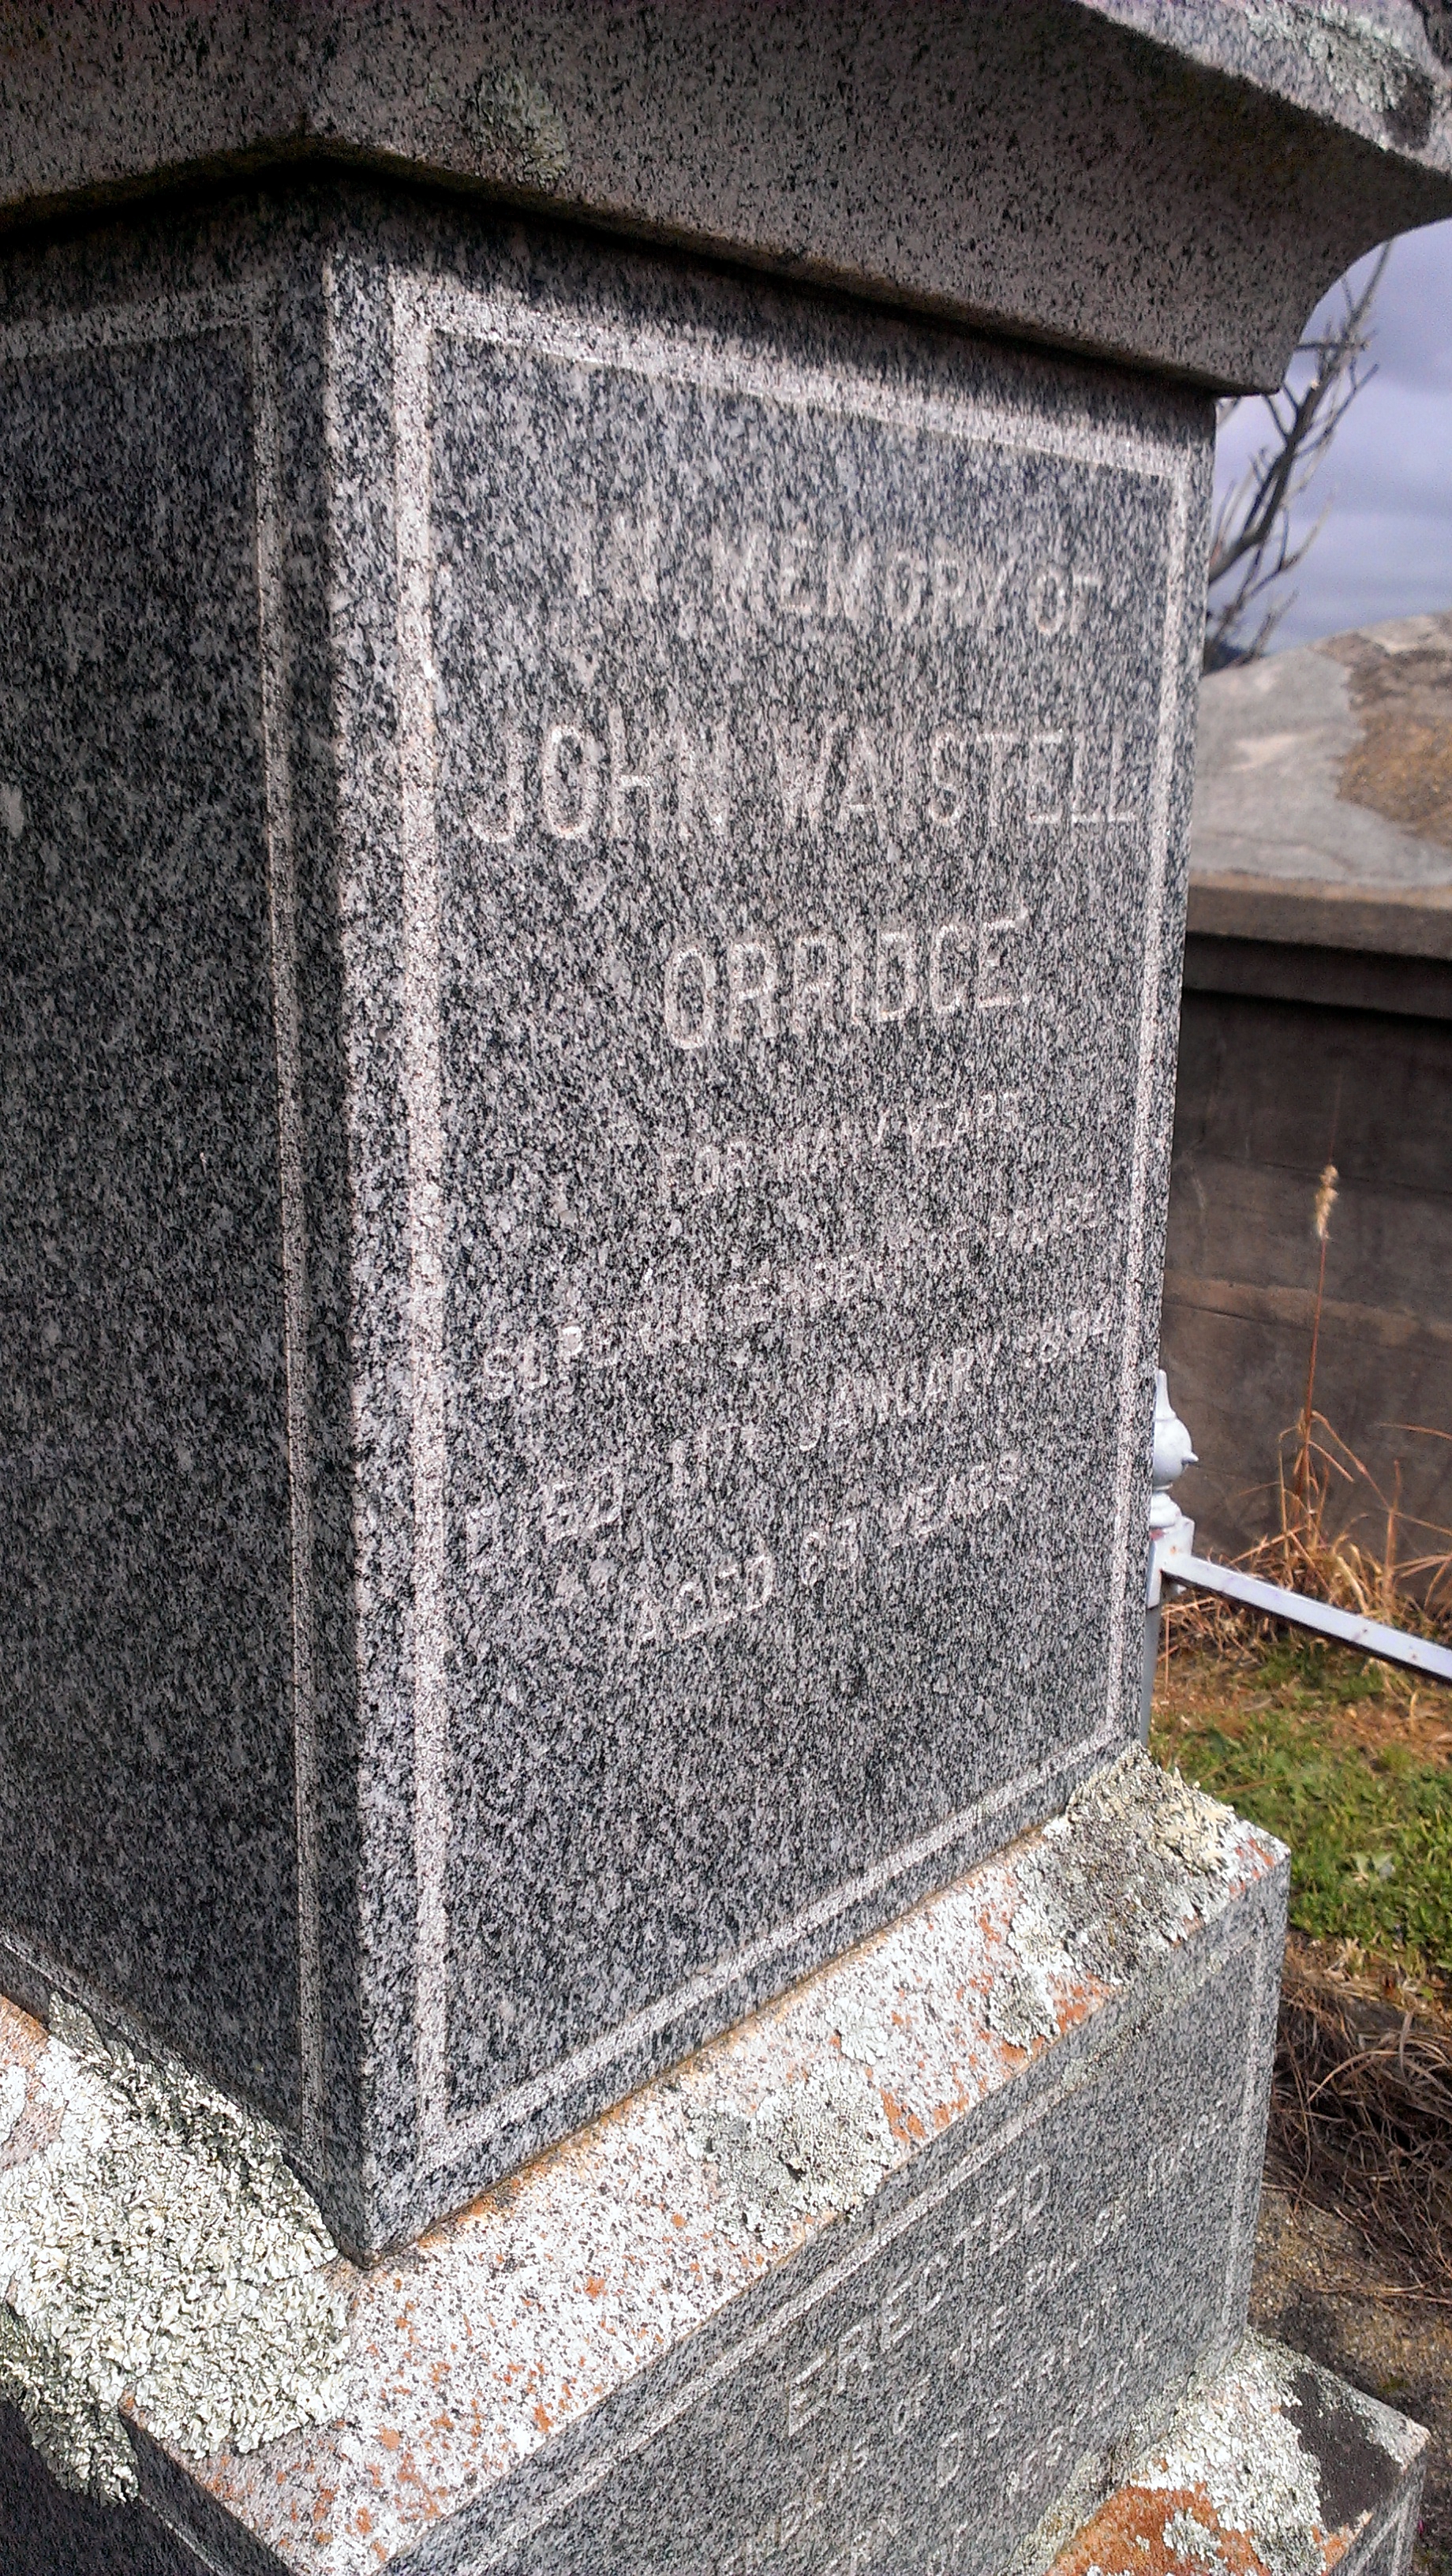 John Waistill ORRIDGE - Grave